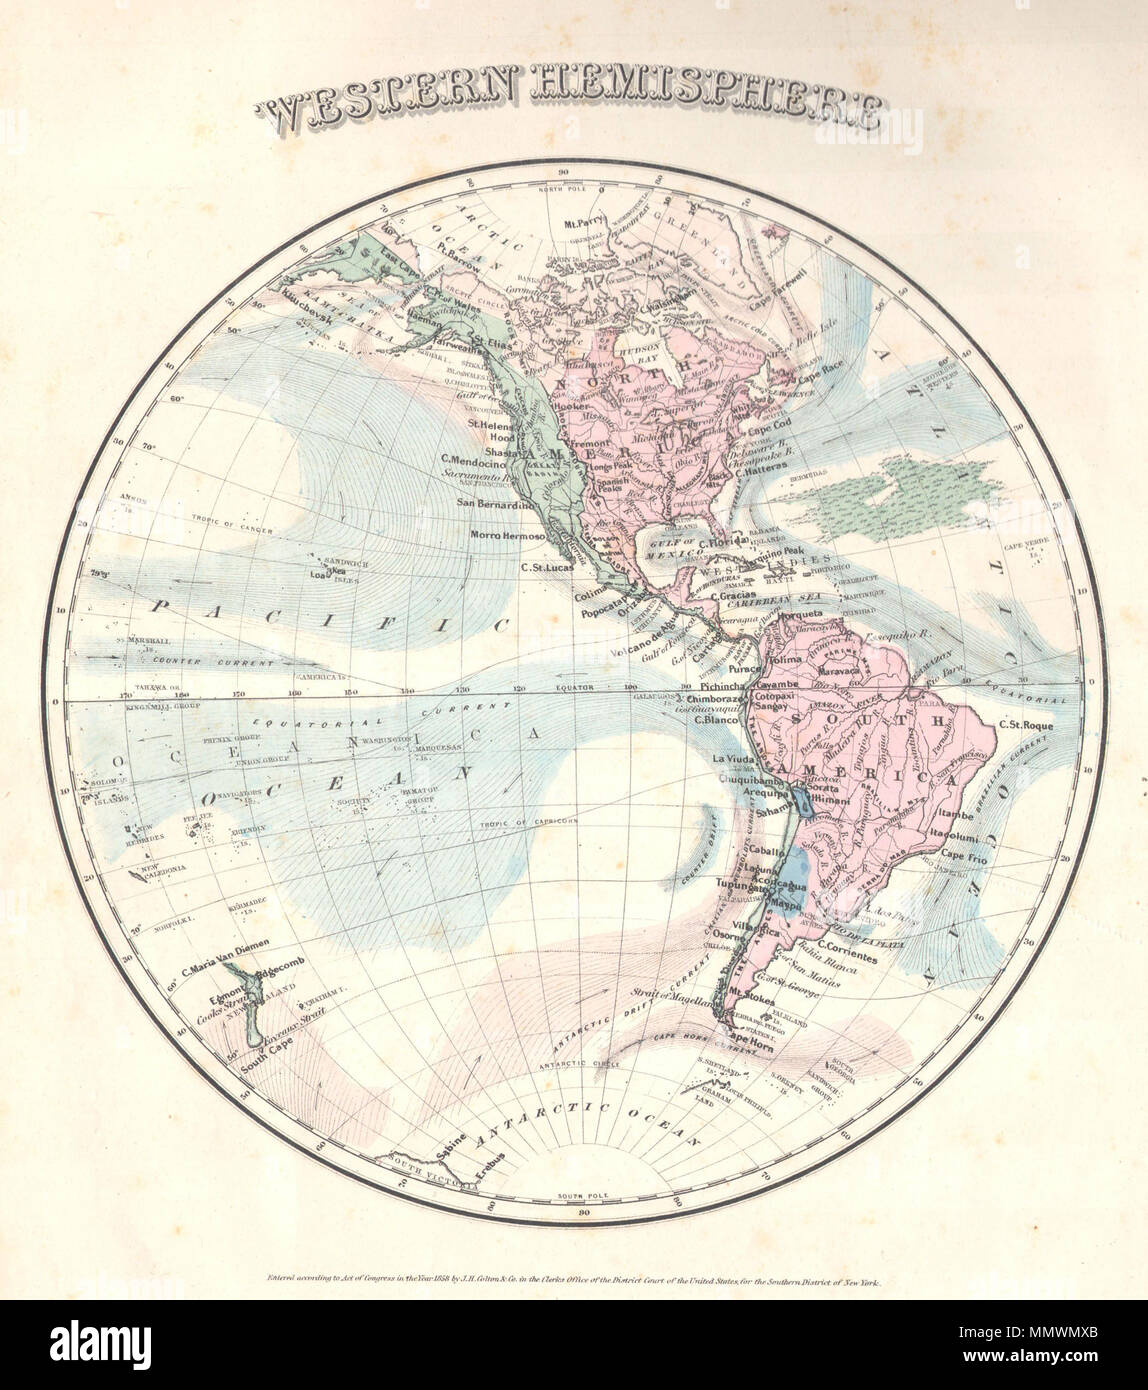 . Anglais : ce rare carte colorée à la main est une plaque de cuivre gravure, datant de 1858 par le célèbre cartographe américain du xixe siècle Colton. Il s'agit d'une représentation de l'hémisphère occidental, y compris l'Amérique du Nord et du Sud. Caractéristiques océaniques comme la mer des Sargasses de cette carte est de la transition du Cabinet rares Colton Atlas. Ce rare carte indique les produits par région, de la température et de l'altitude. La région de l'or de Californie est clairement indiquée. La carte est datée de 1858. L'hémisphère ouest. 1858. 1858 Colton's Carte de l'hémisphère occidental - Geographicus - WesternHemi-colton-1858 Banque D'Images